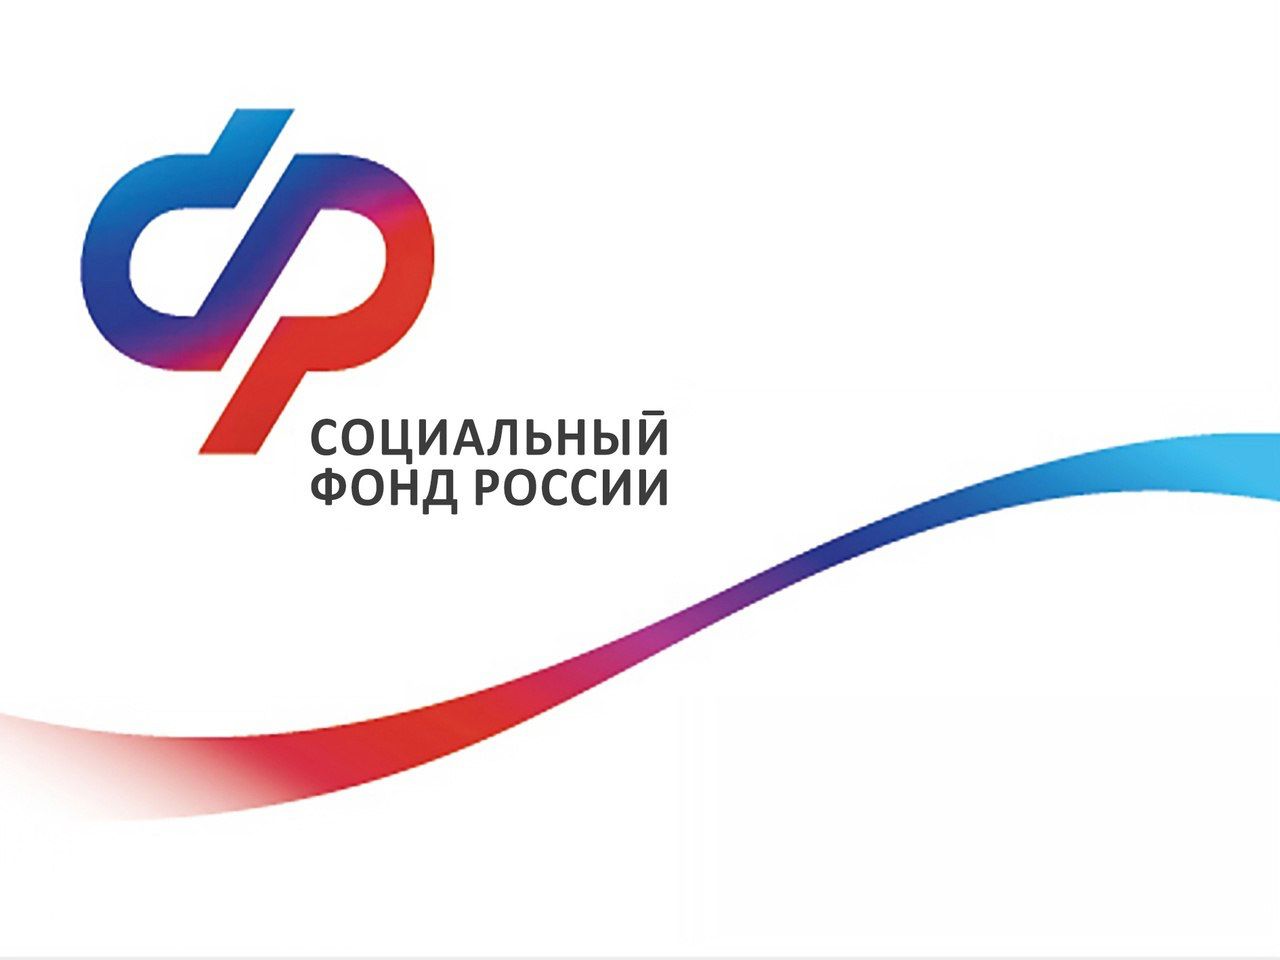 С 1 апреля Отделение СФР по Новгородской области проиндексирует социальные пенсии жителей региона на 7,5%.